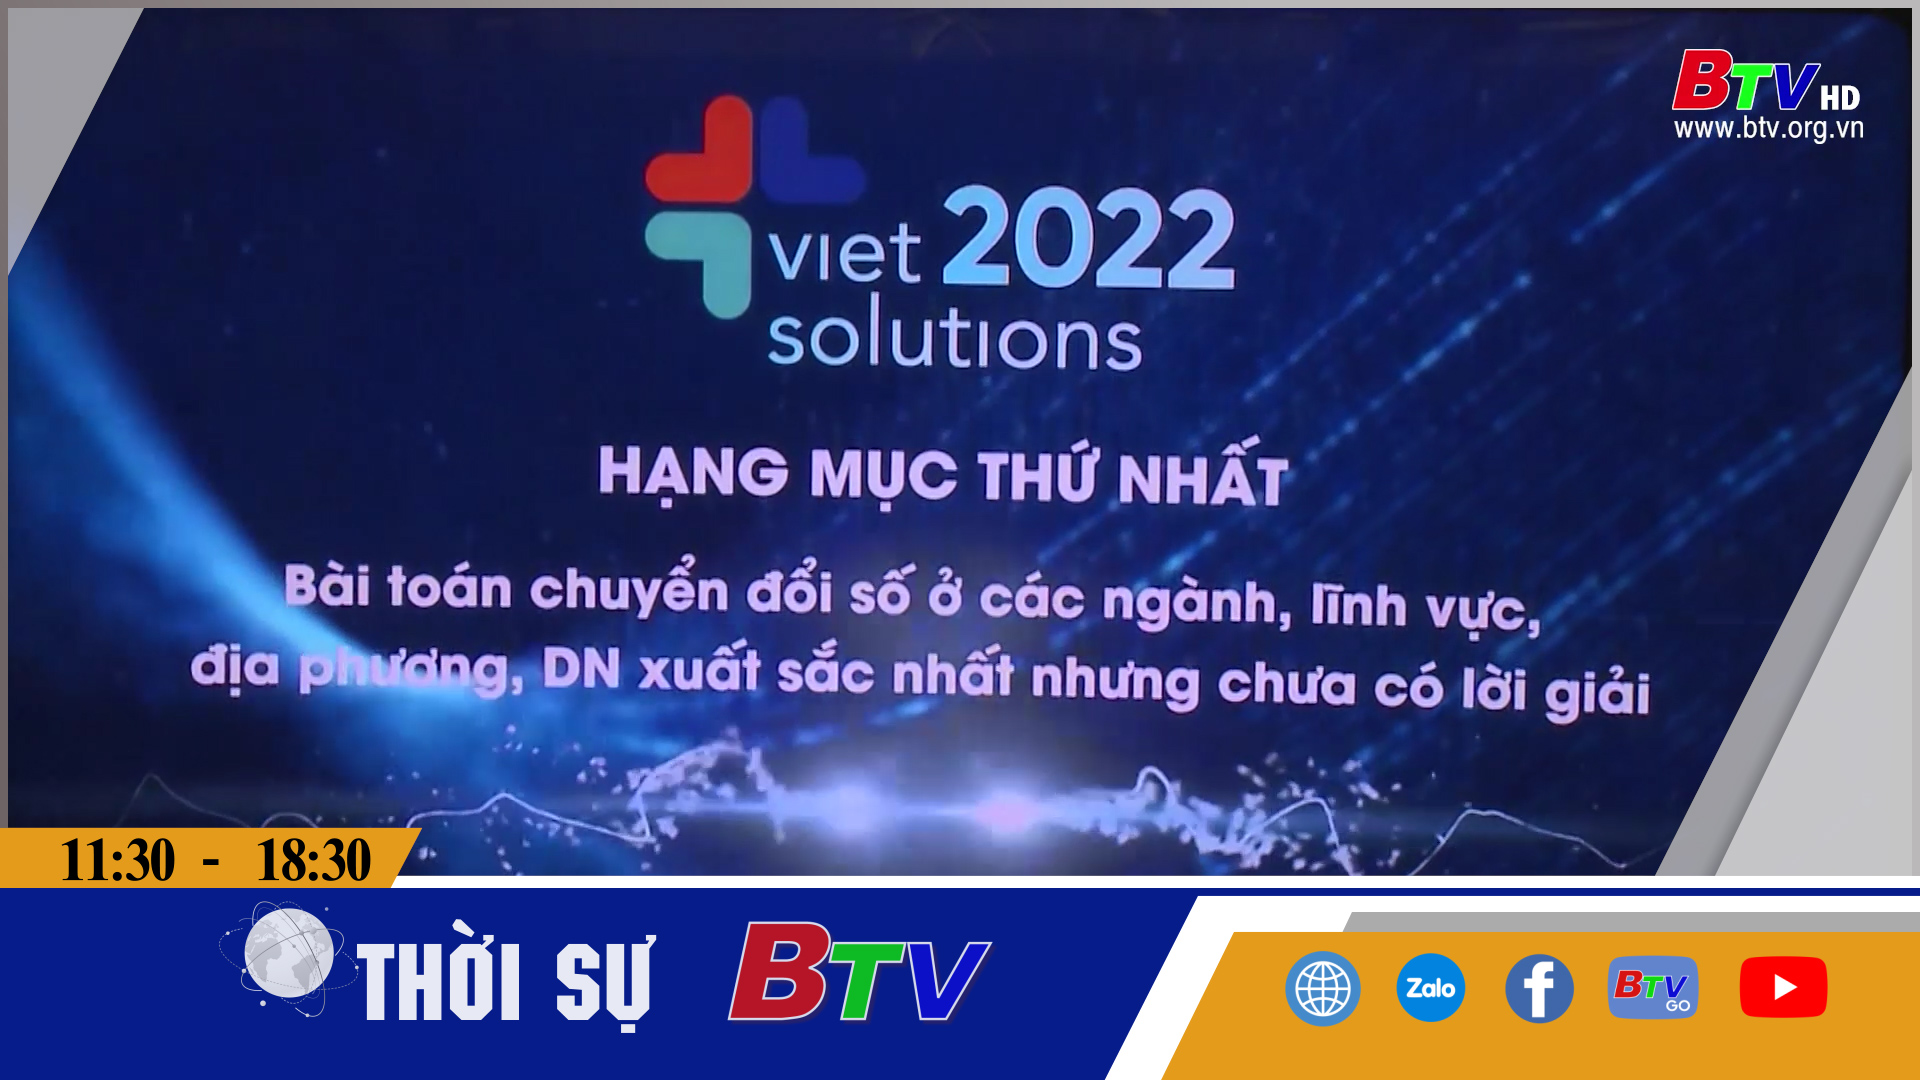 Cuộc thi “Tìm kiếm giải pháp Chuyển đổi số Quốc gia - Viet Solutions 